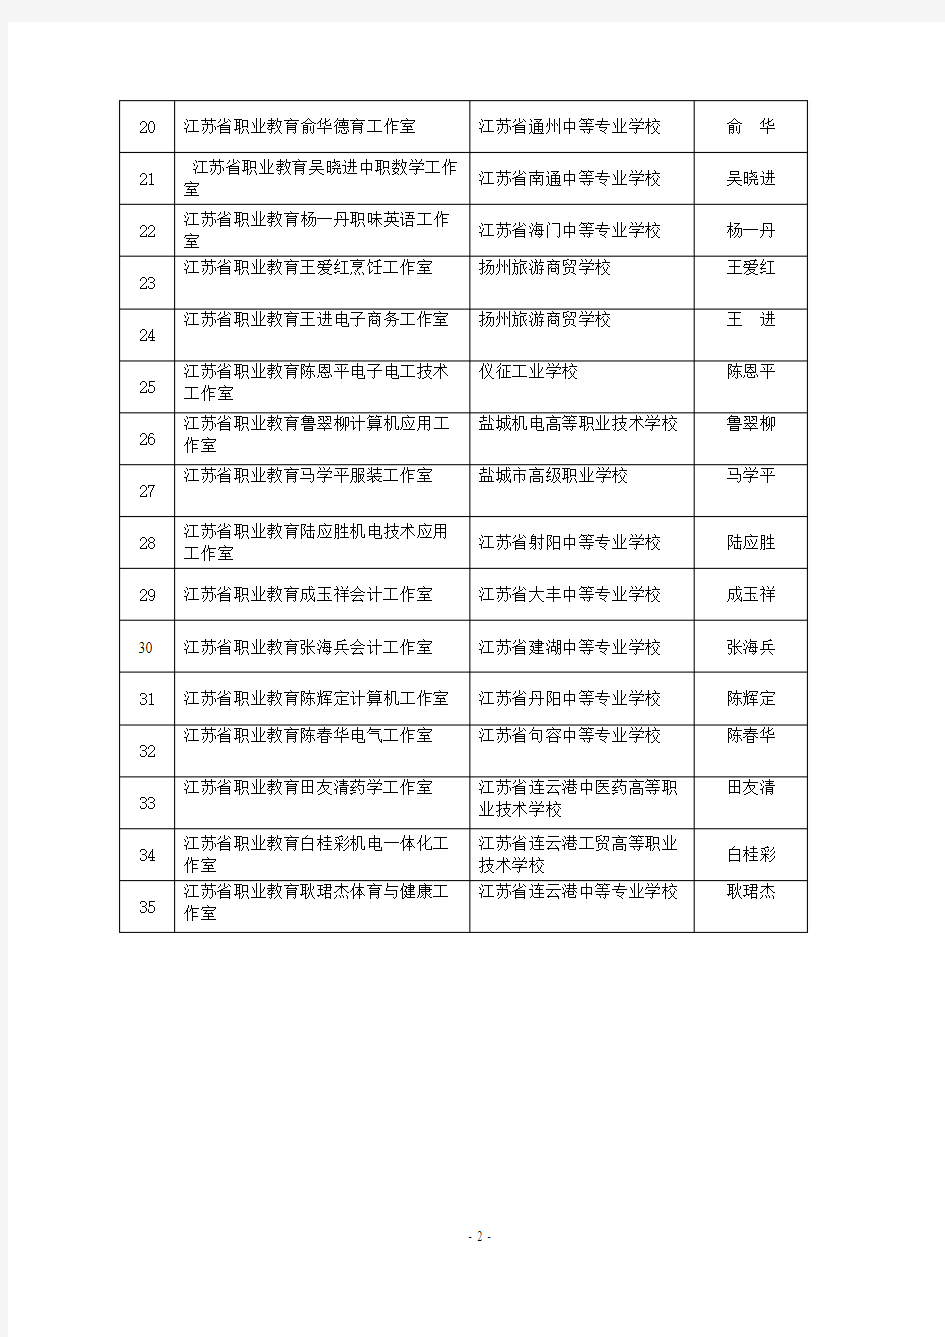 第四批江苏省职业教育名师工作室建设名单